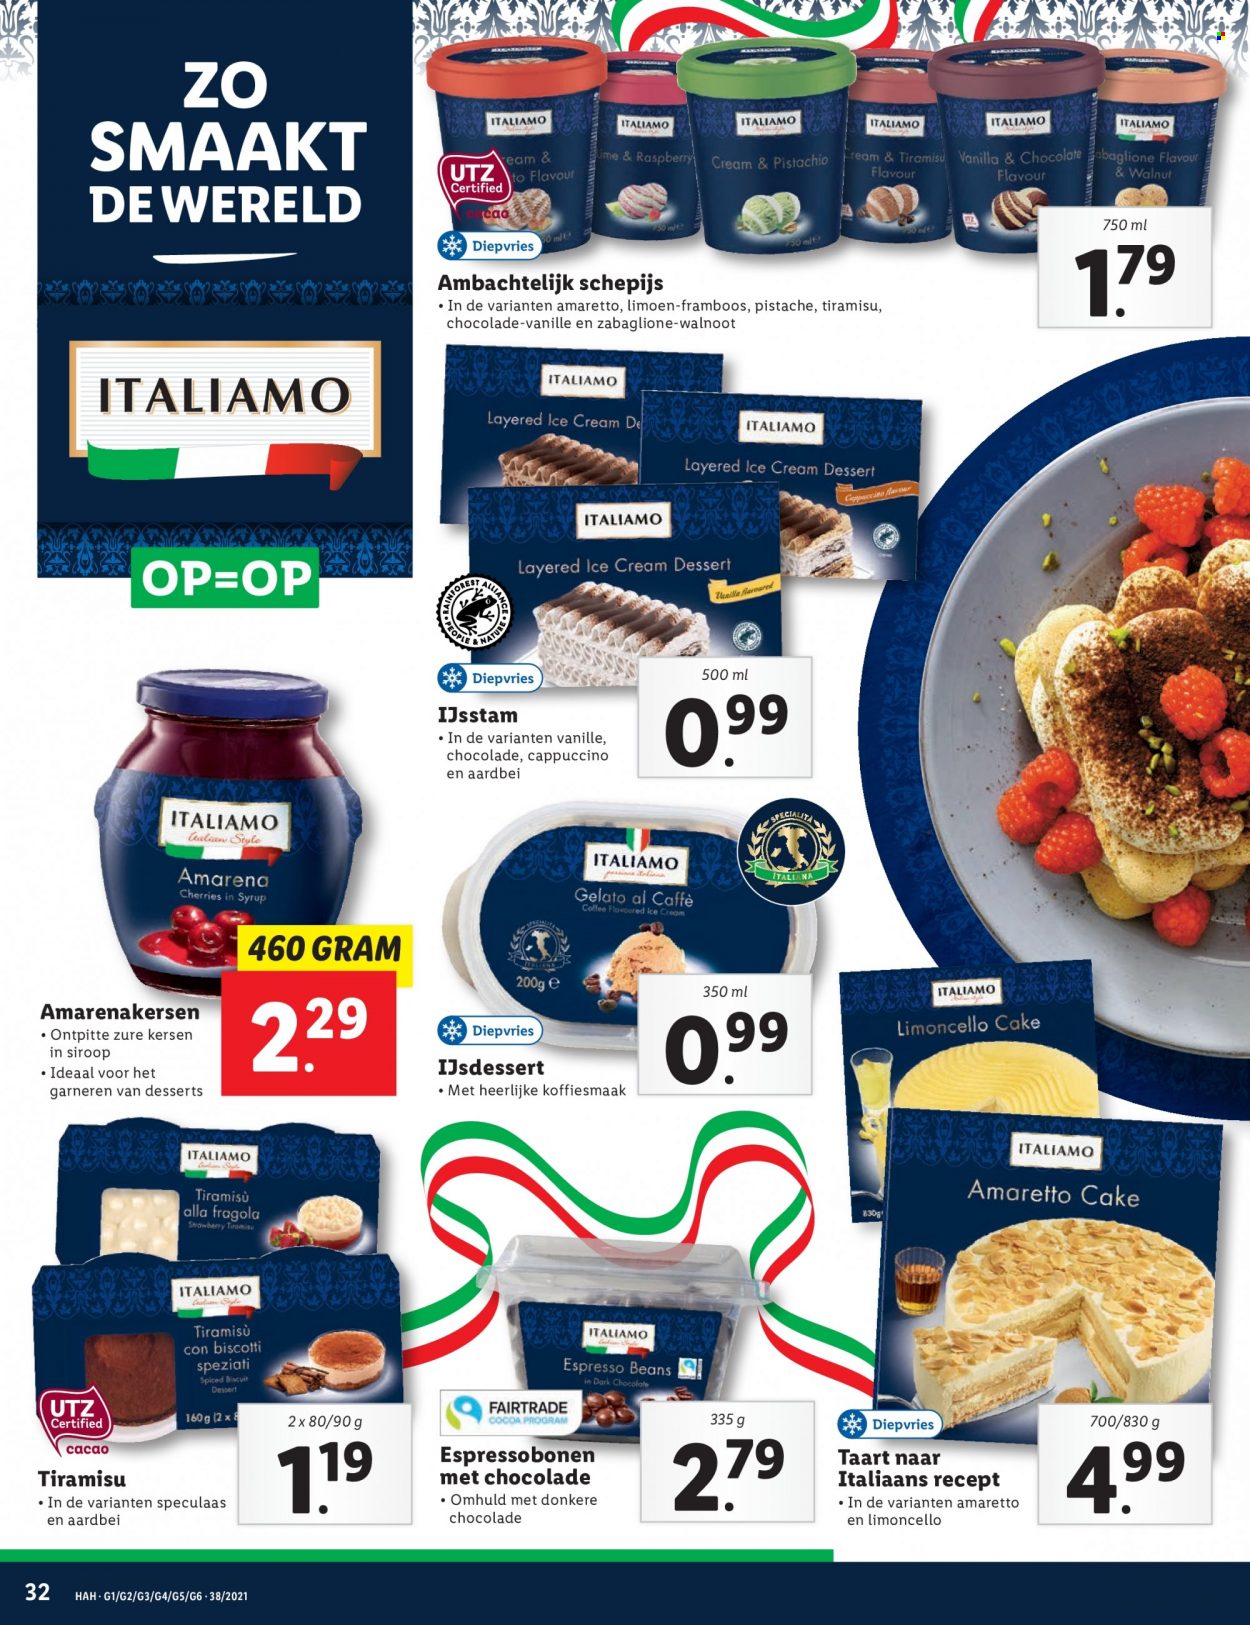 thumbnail - Lidl-aanbieding - 20-9-2021 - 26-9-2021 -  producten in de aanbieding - Italiamo, kersen, limoen, ijsdessert, gelato, biscotti, amarena kersen op siroop, walnoten, Espresso. Pagina 32.